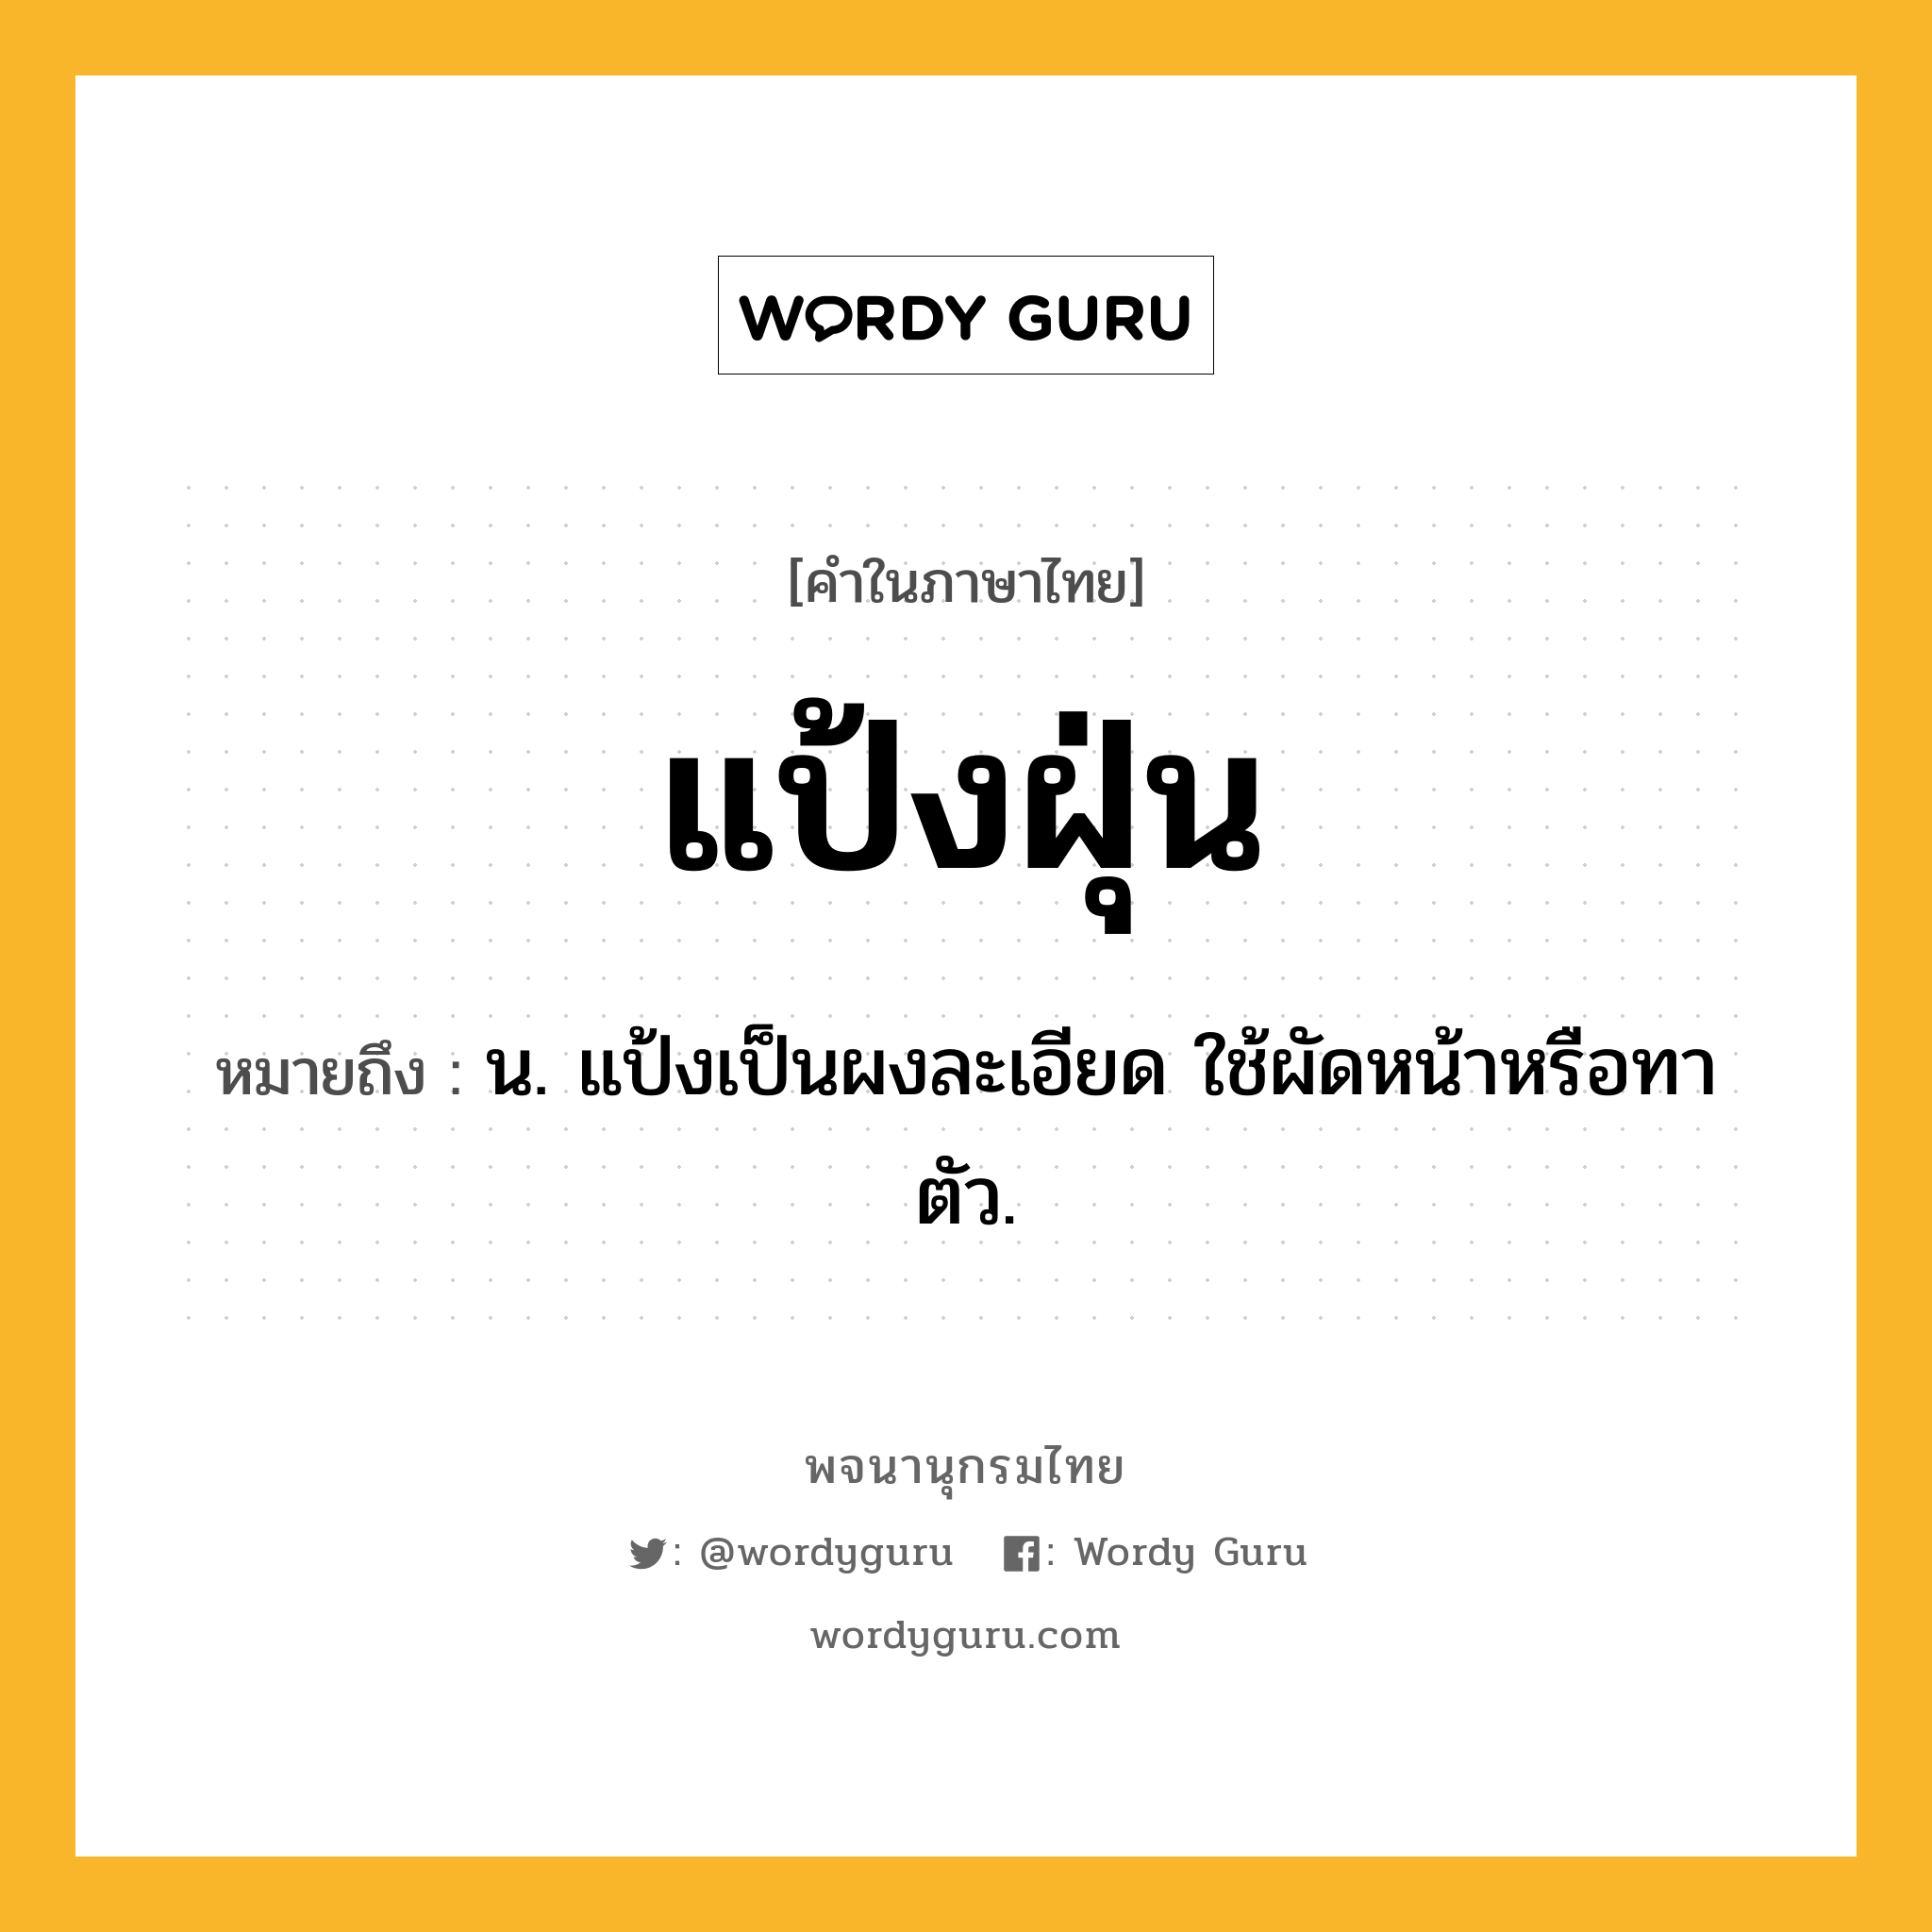 แป้งฝุ่น หมายถึงอะไร?, คำในภาษาไทย แป้งฝุ่น หมายถึง น. แป้งเป็นผงละเอียด ใช้ผัดหน้าหรือทาตัว.